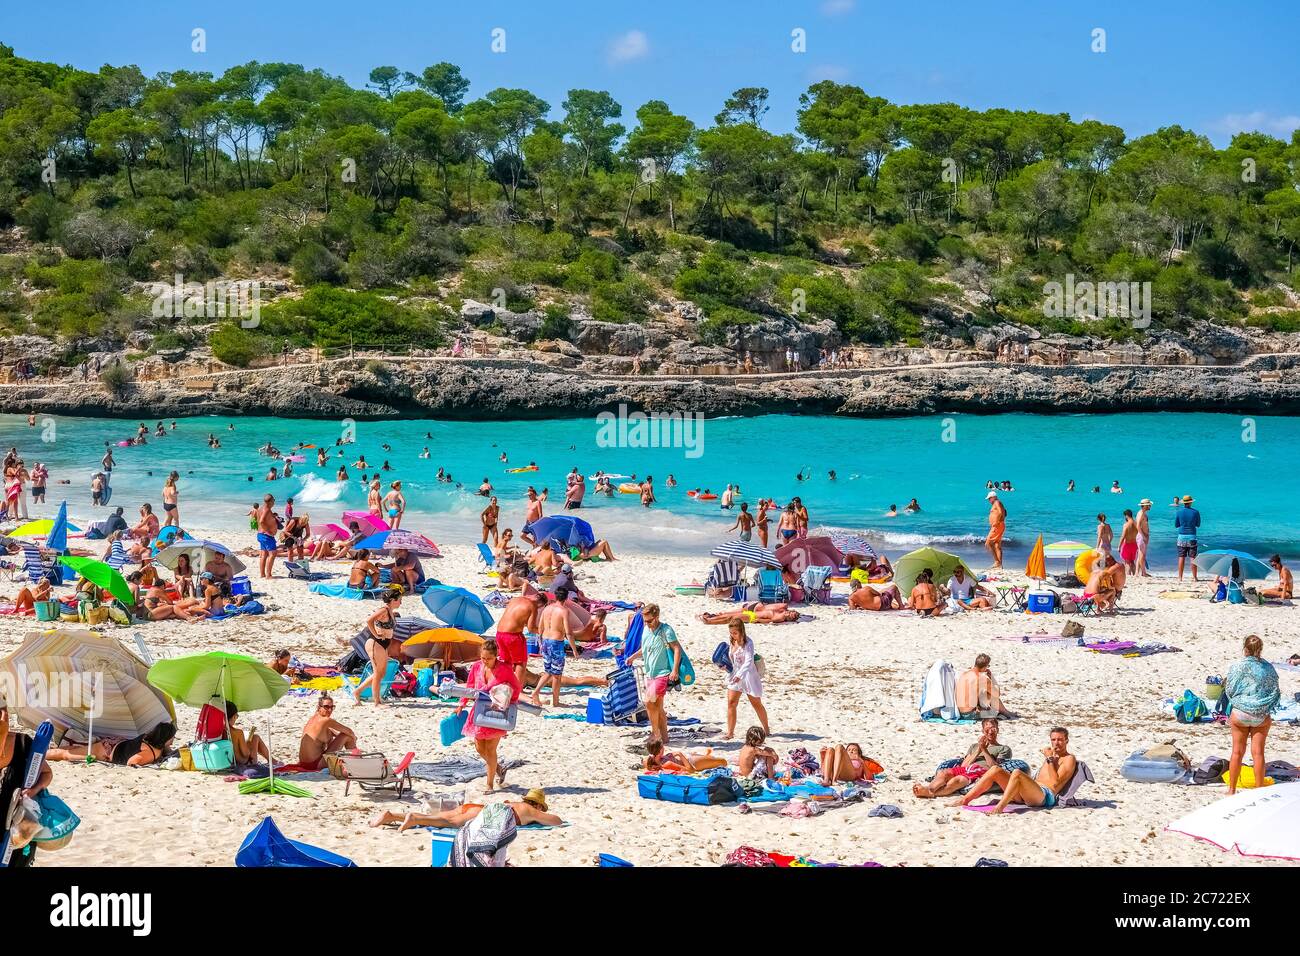 Playa solitaria en el Parc Natural de Mondrago y playa S'amador con numerosos bañistas, que suelen mantener la distancia mínima durante la Corona pandemi Foto de stock